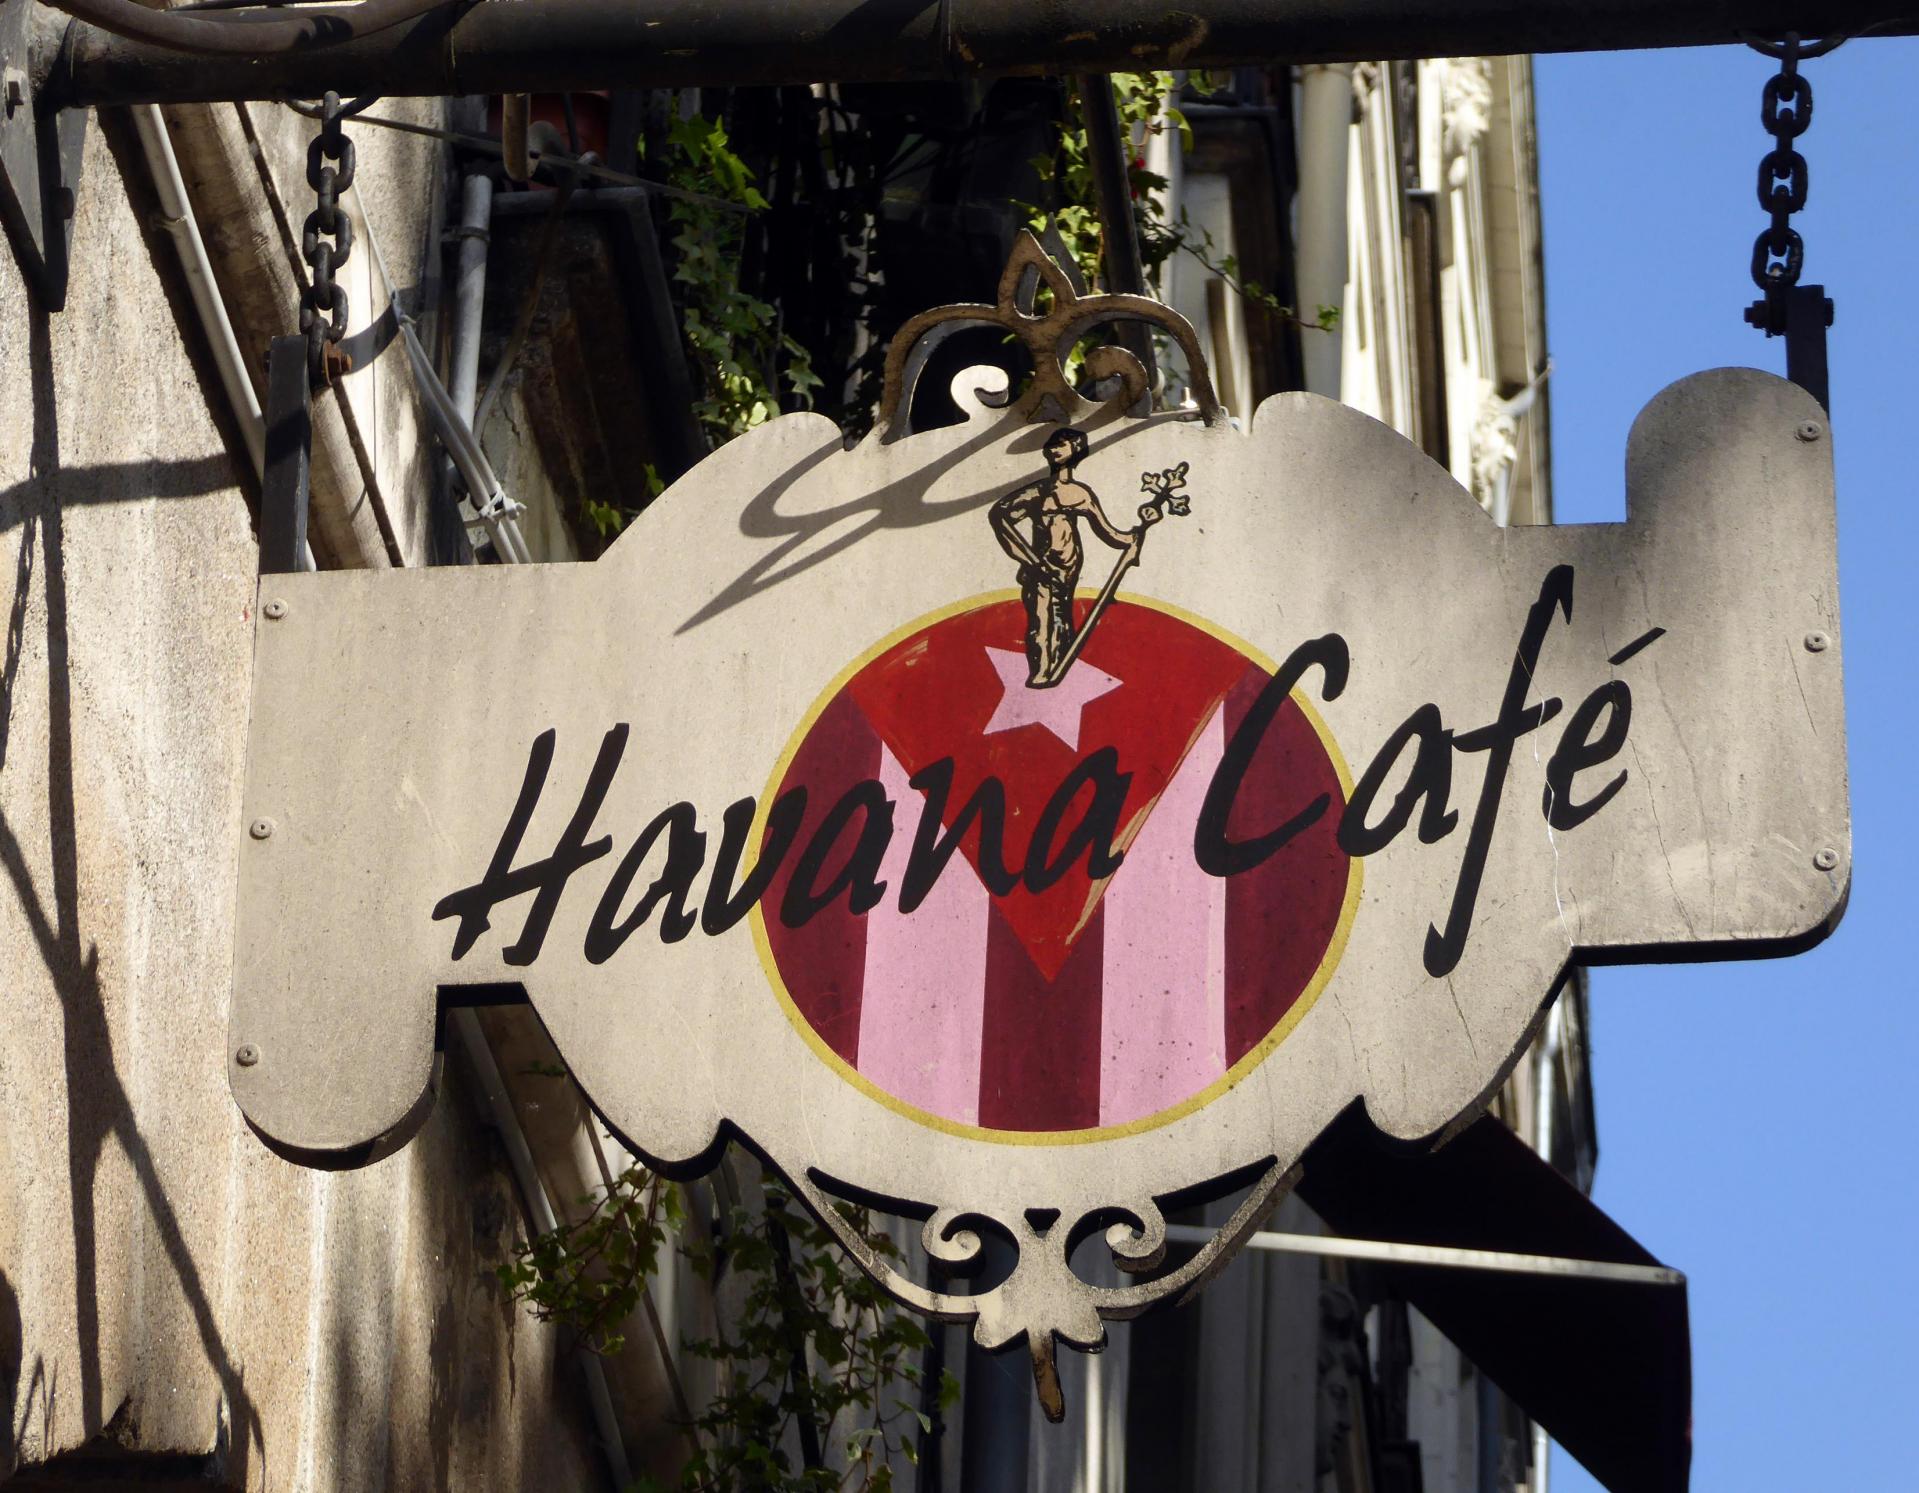 Havana café (bar de nuit) - Nantes